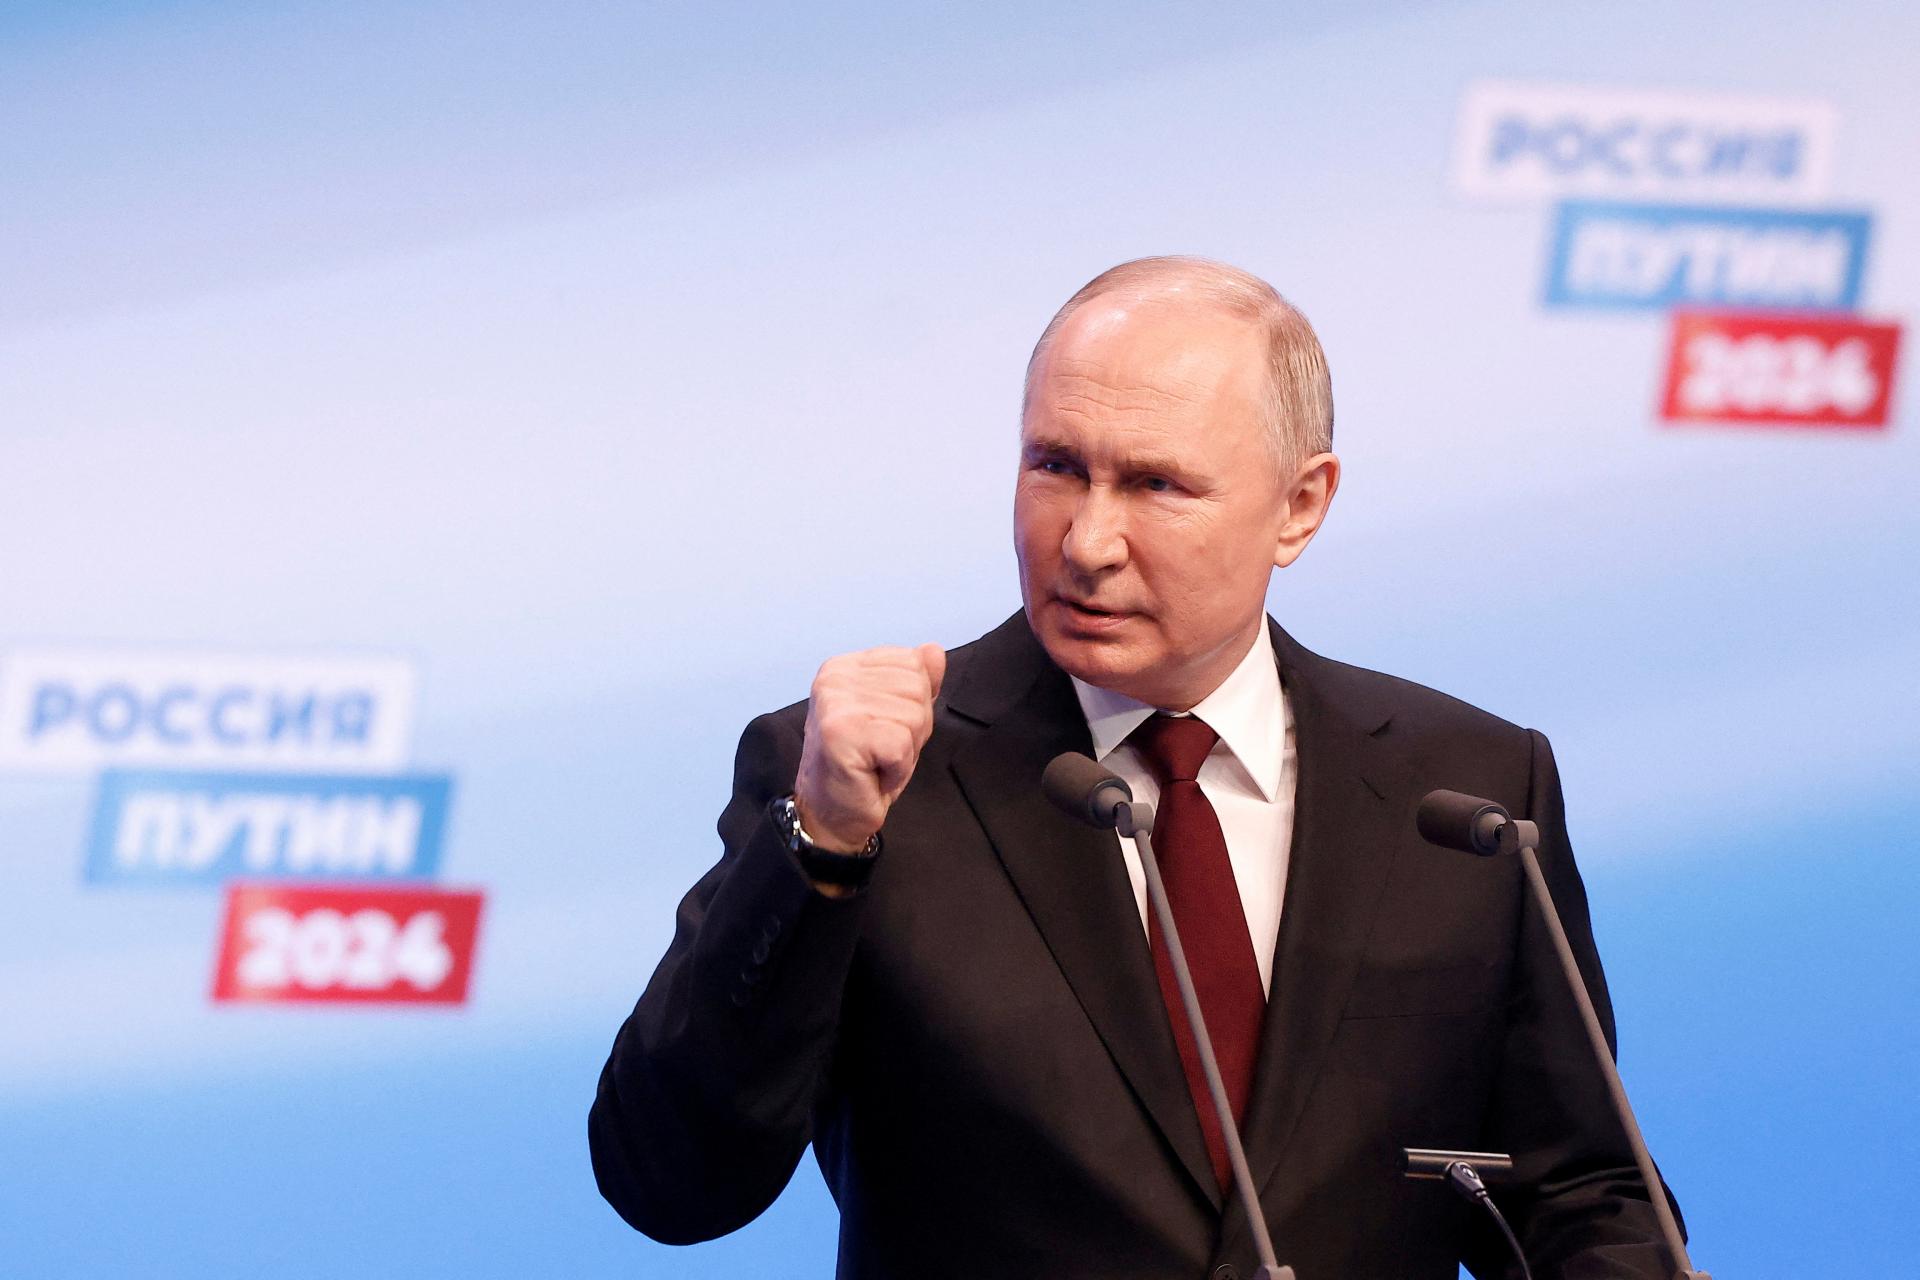 Očakávané víťazstvo. Ruská volebná komisia sčítala všetky hlasy, Putin získal viac ako 87 percent